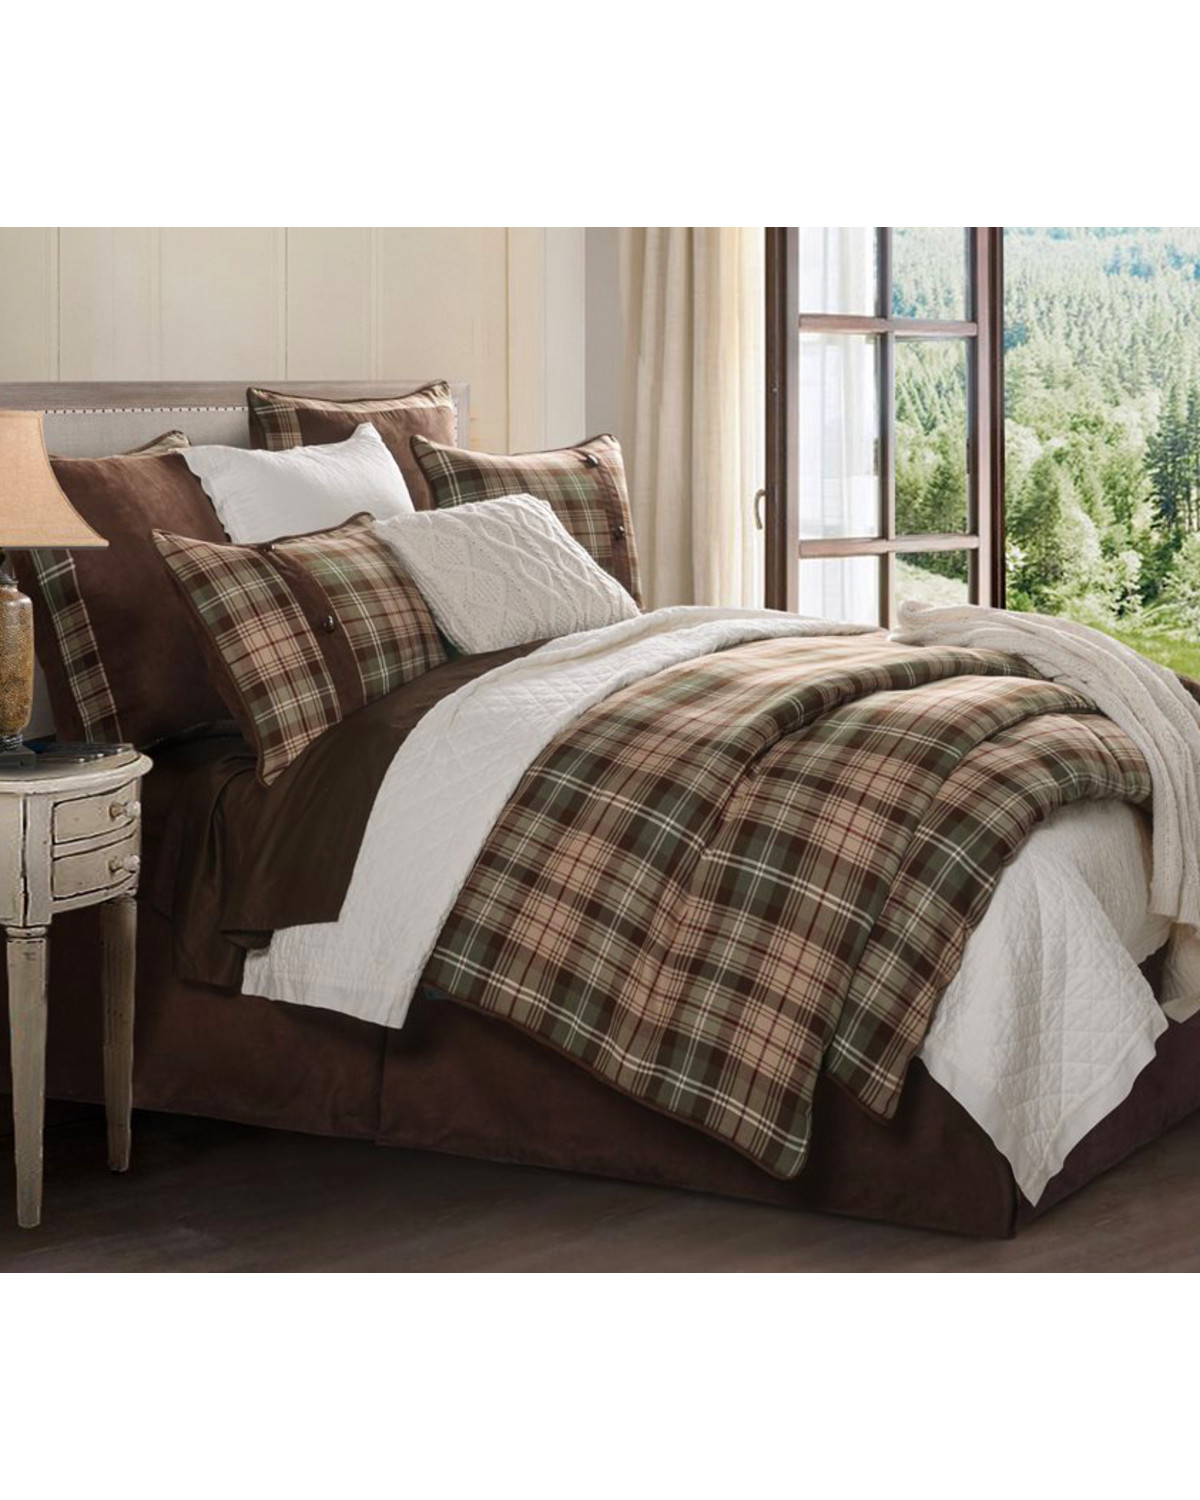 HiEnd Accents Huntsman Comforter Set - King